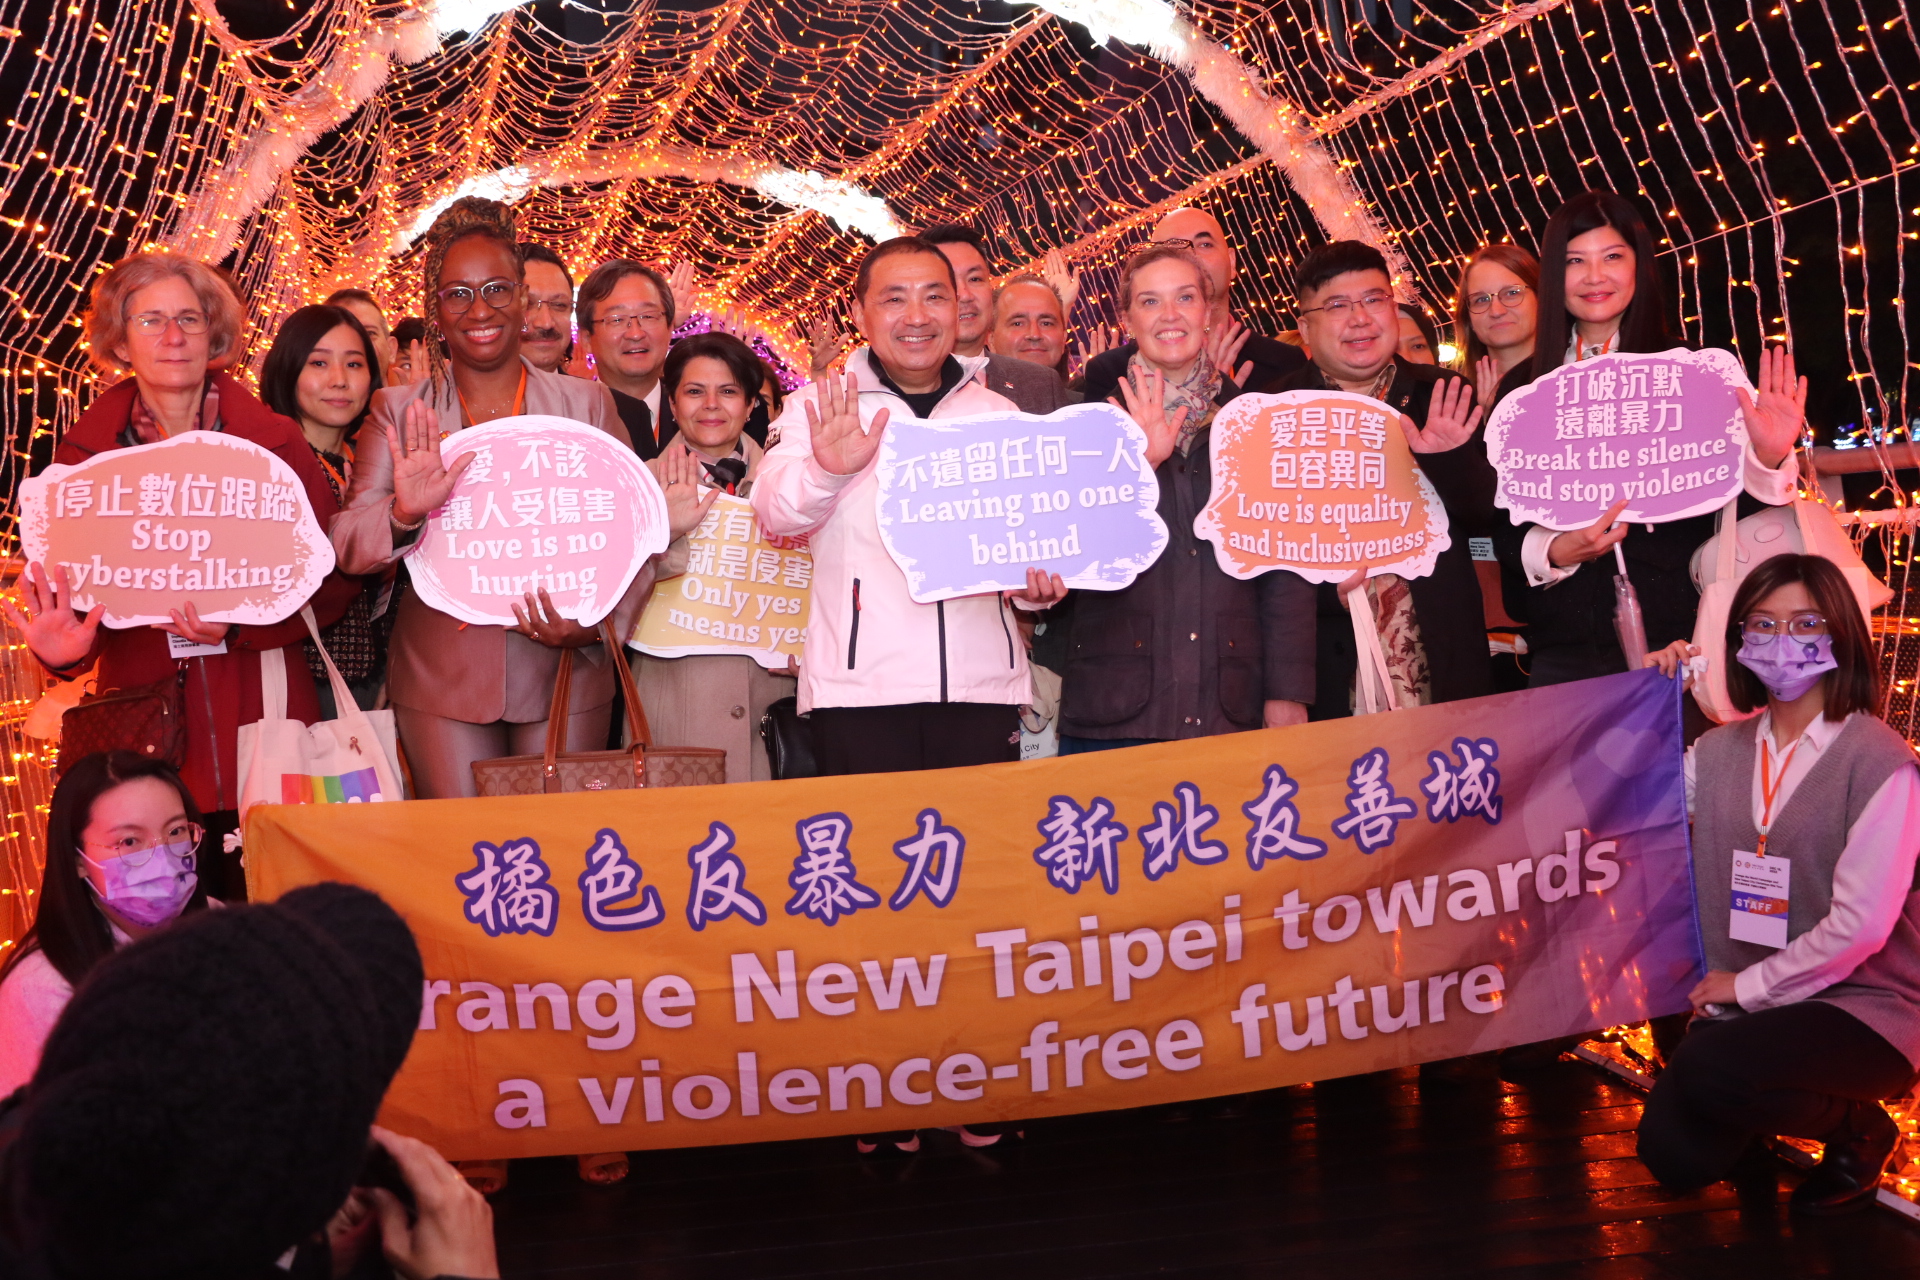 來自15國的大使、代表、商會等國際夥伴及新北市婦女團體  一起在橘色光廊宣示「向暴力say NO」